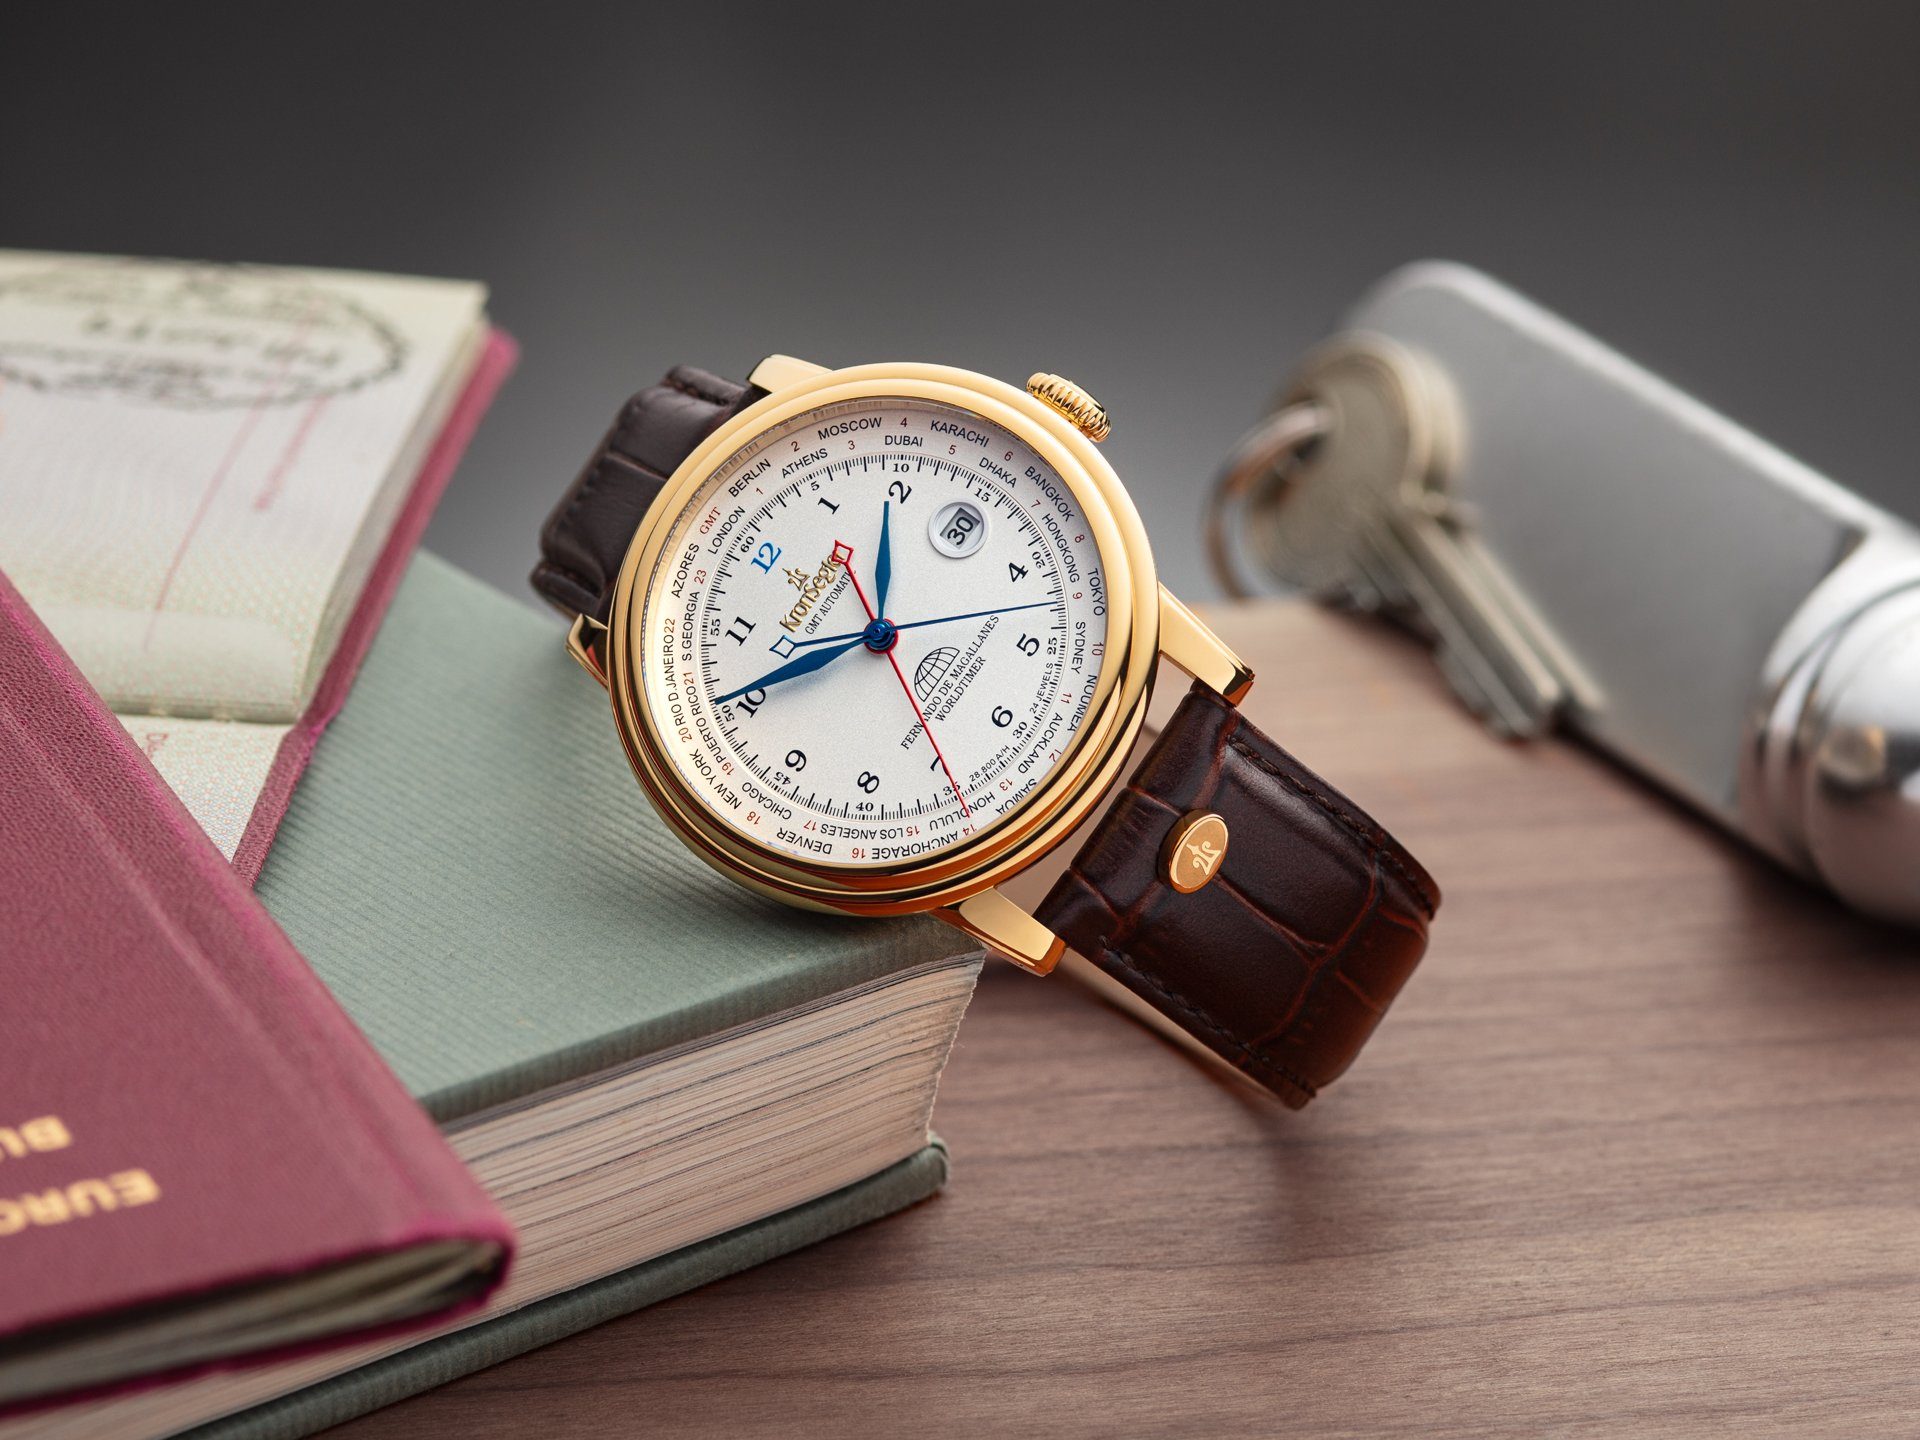 GMT Lederband, Kronsegler Herren Magallanes" mit Automatikuhr m. Armbanduhr gold-silberweiß/braun "Fernando Worldtimer de